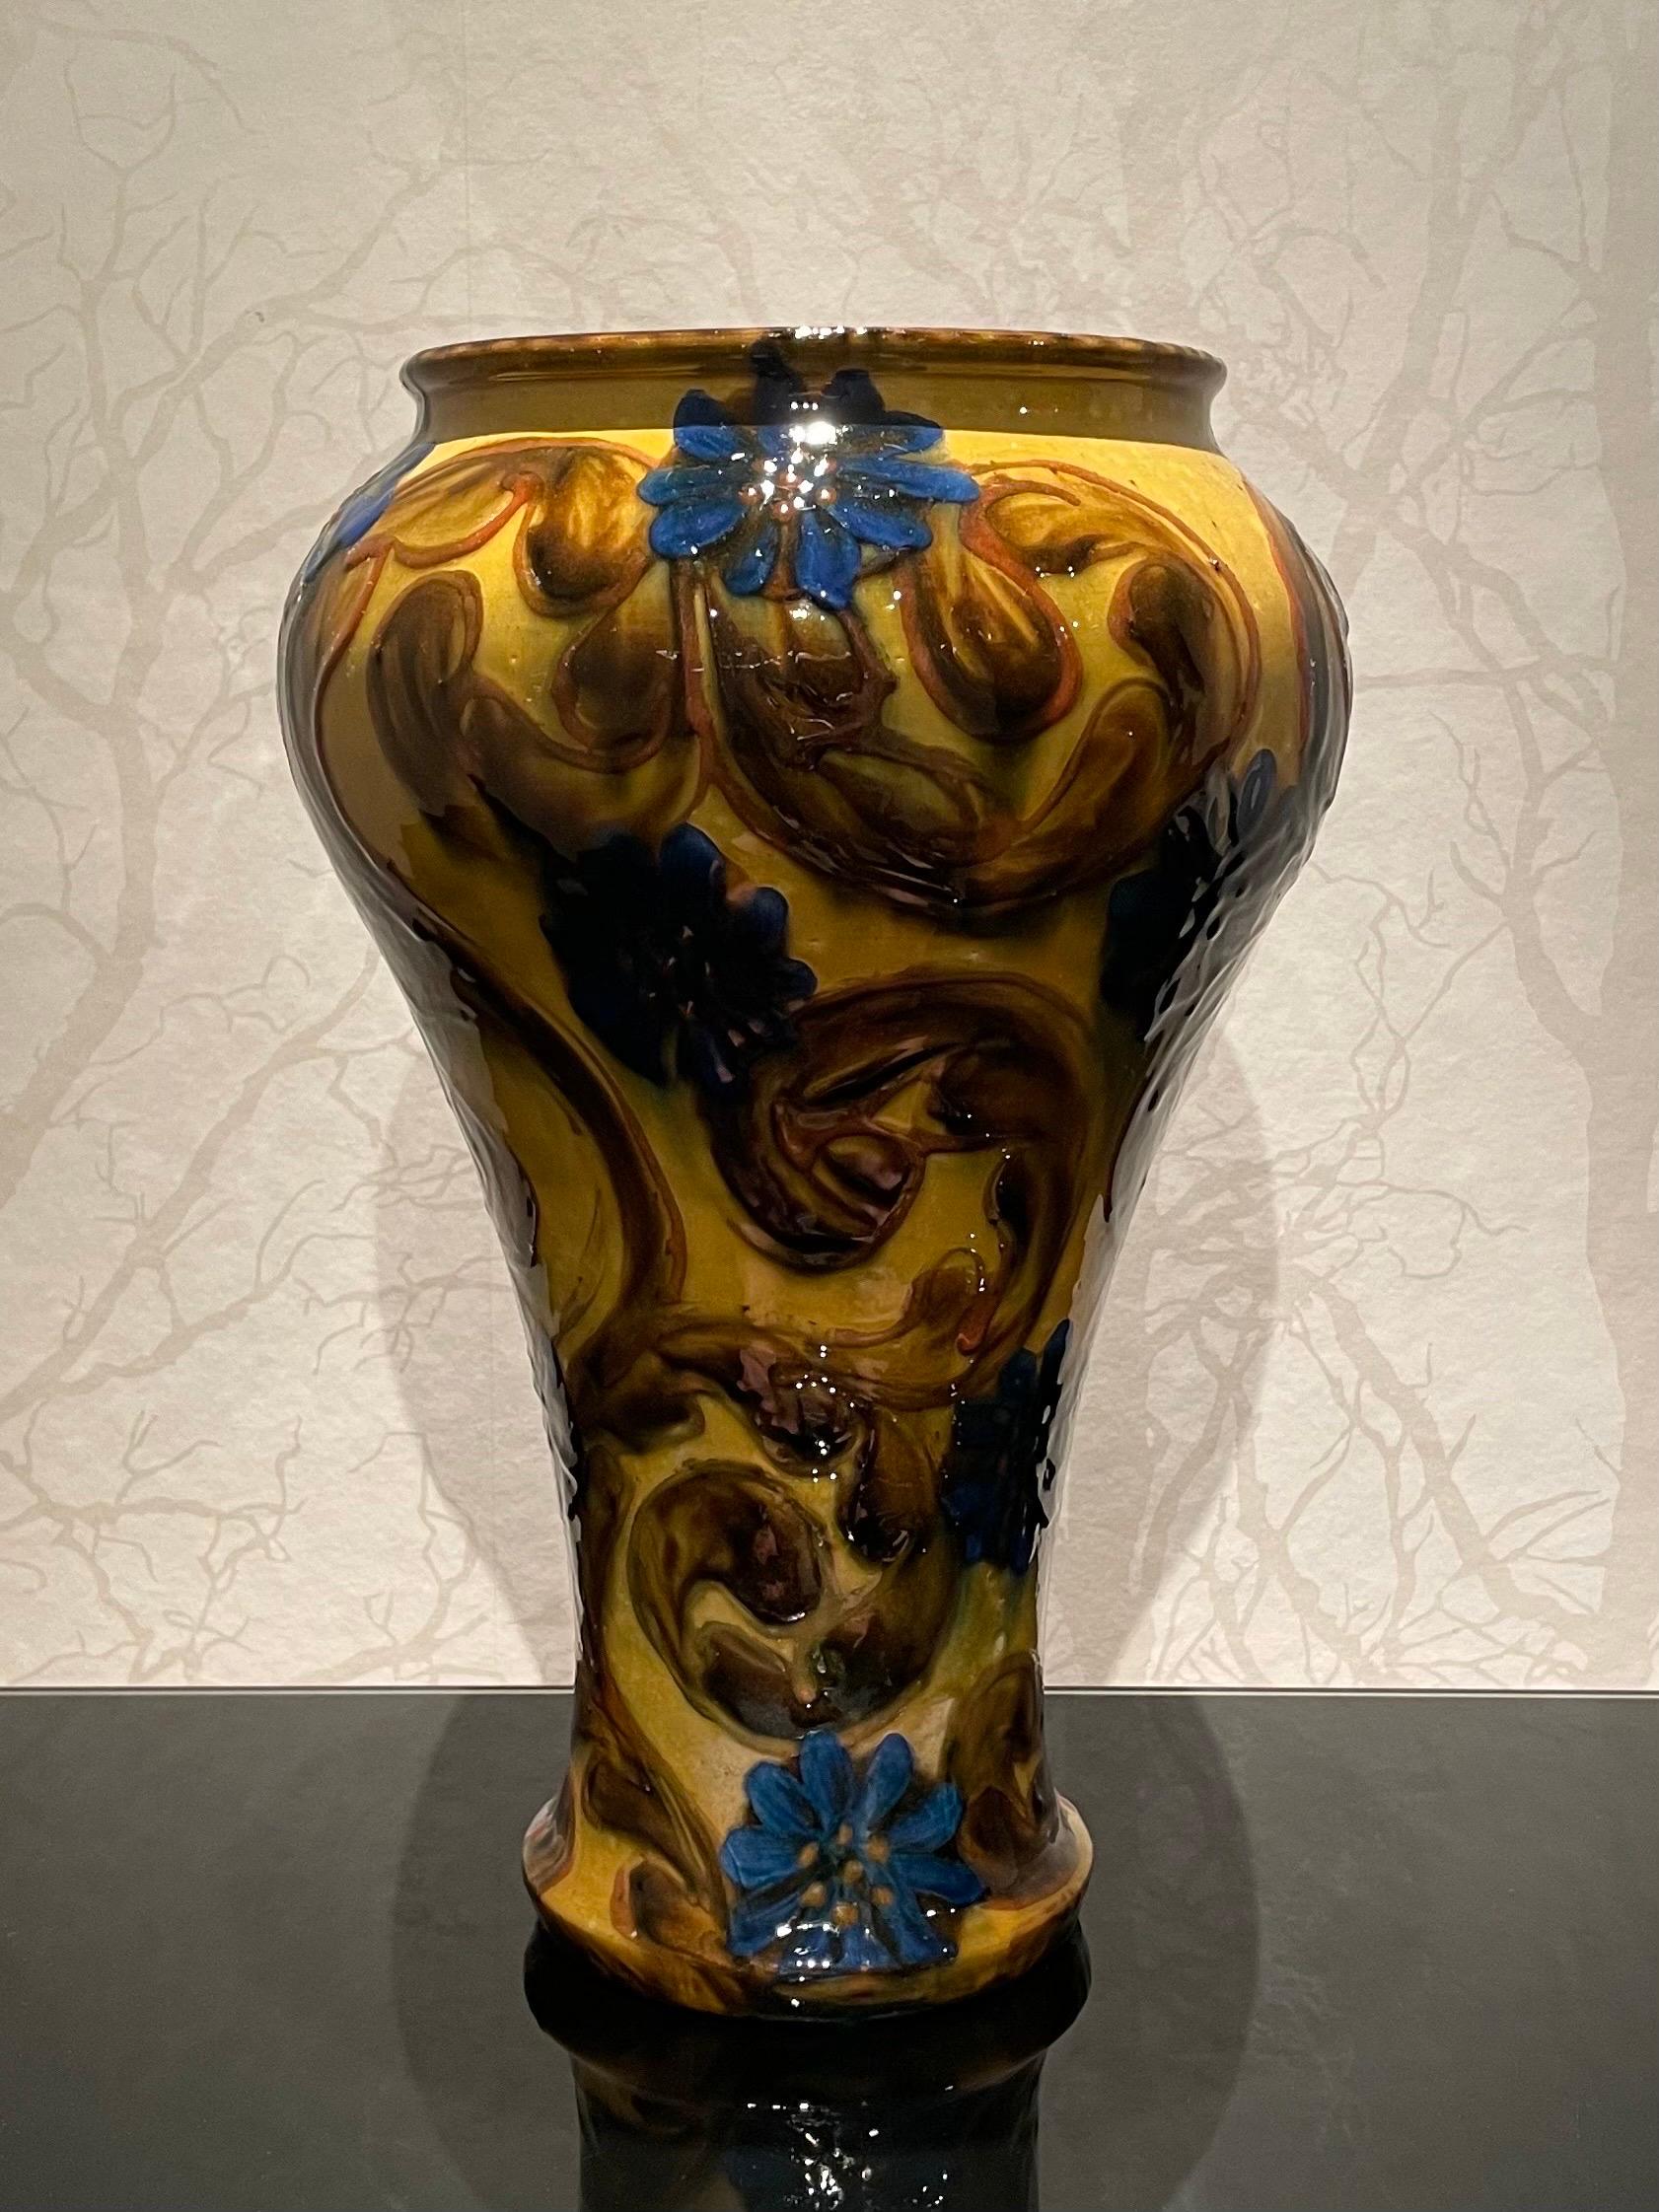 Dies ist die dänische 36 cm hohe Keramikvase aus den 1920er Jahren von Herman Kähler.

Diese Vase hat einen hohen, stabilen und stolz geformten Körper, eine hochglänzende Oberfläche und braune und blaue Farben auf einer Basis aus senfgelber